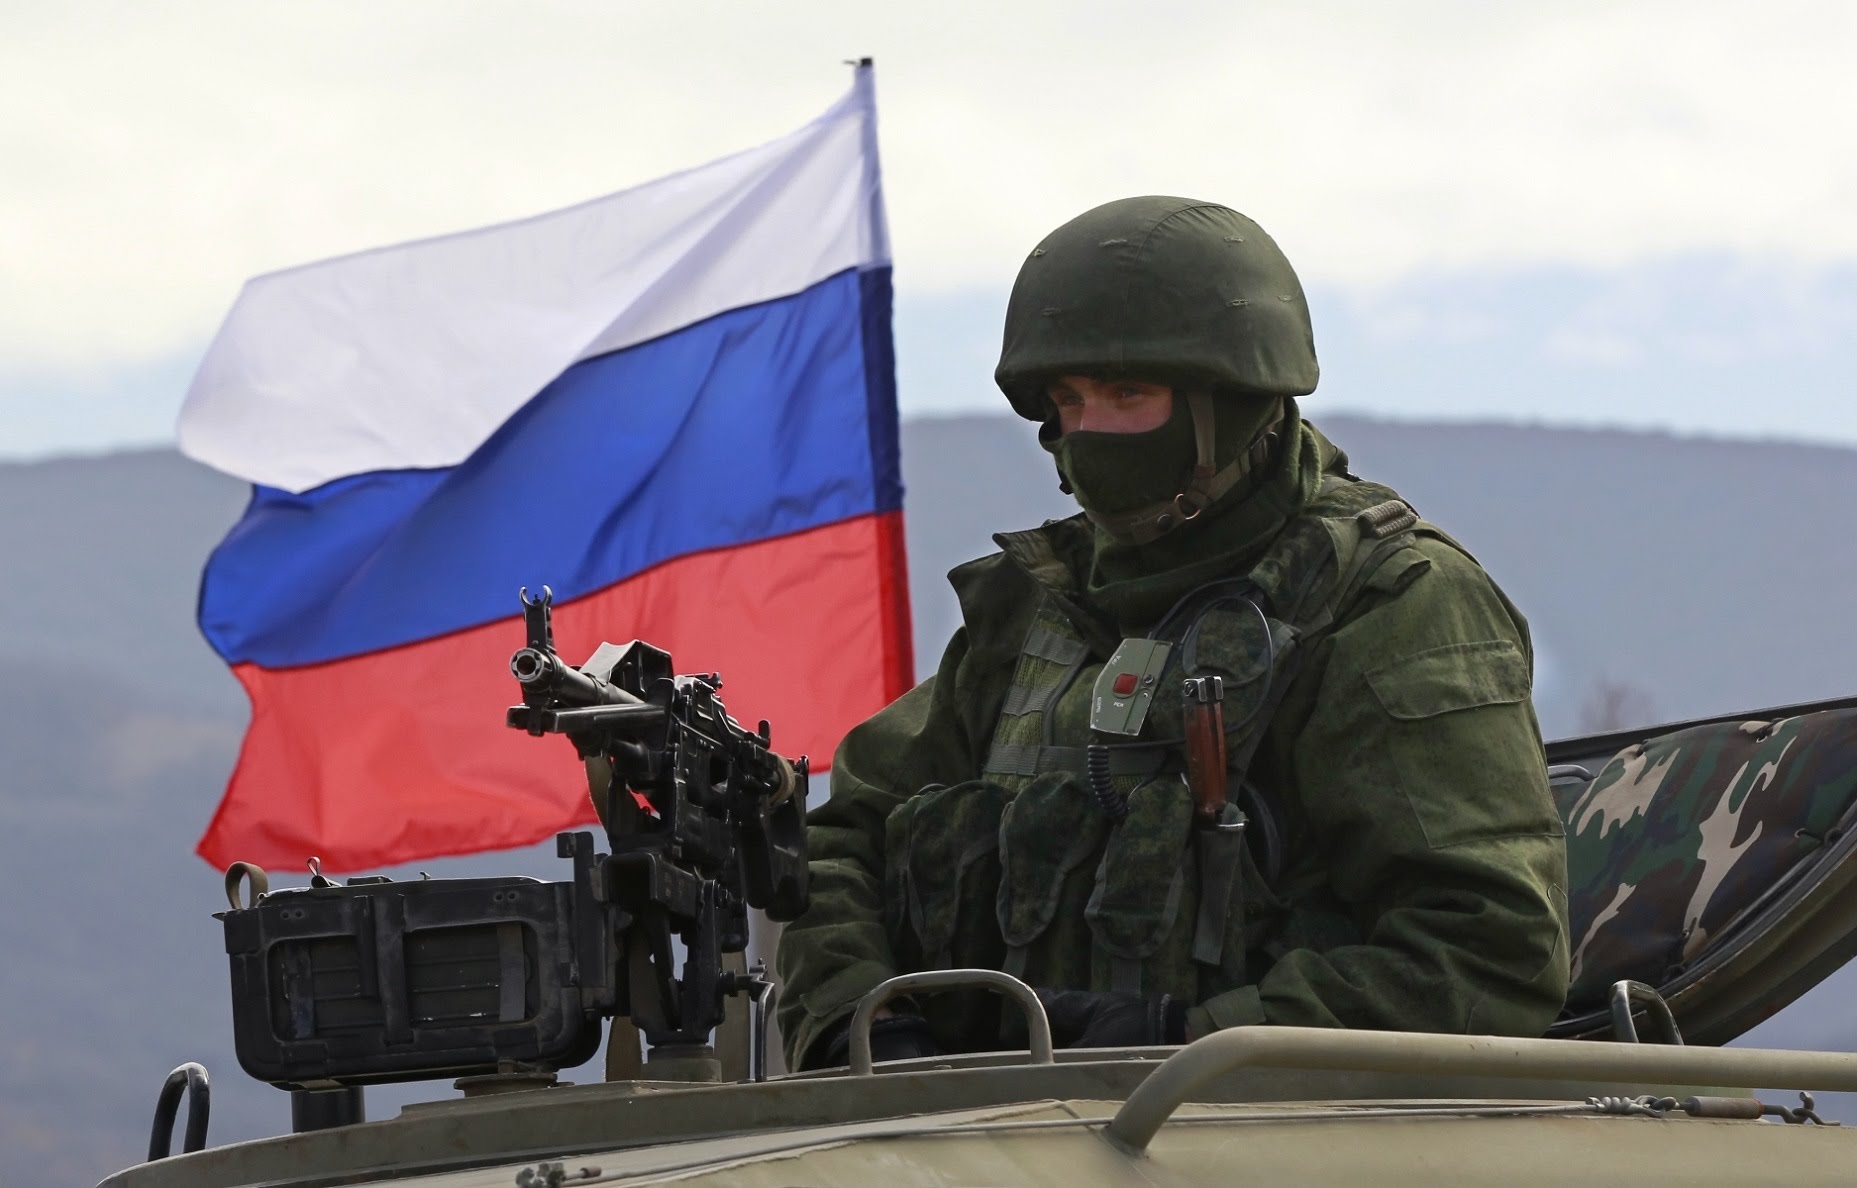 Rusiya qoşunlarının bir hissəsini Ukrayna ilə sərhəddən çıxarır – “FOX NEWS”